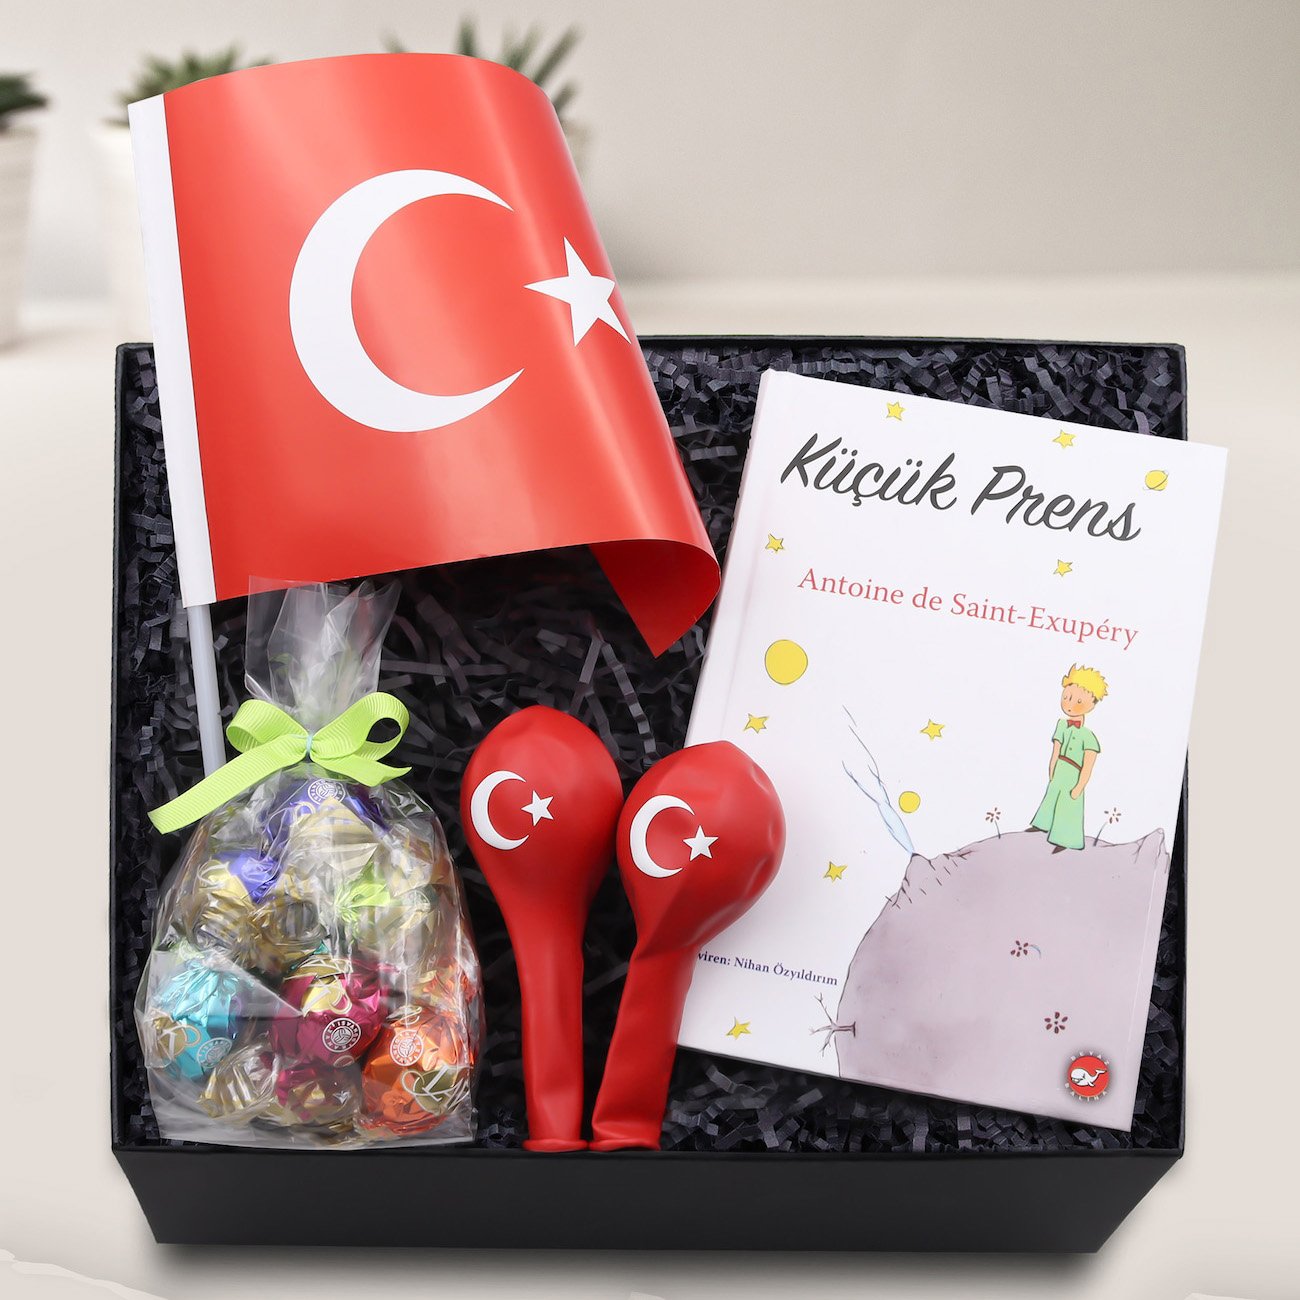 Çocuklara Özel Türk Bayrağı & 2'li Balon & Lavi Çikolata & Küçük Prens Kitabı Hediye Seti